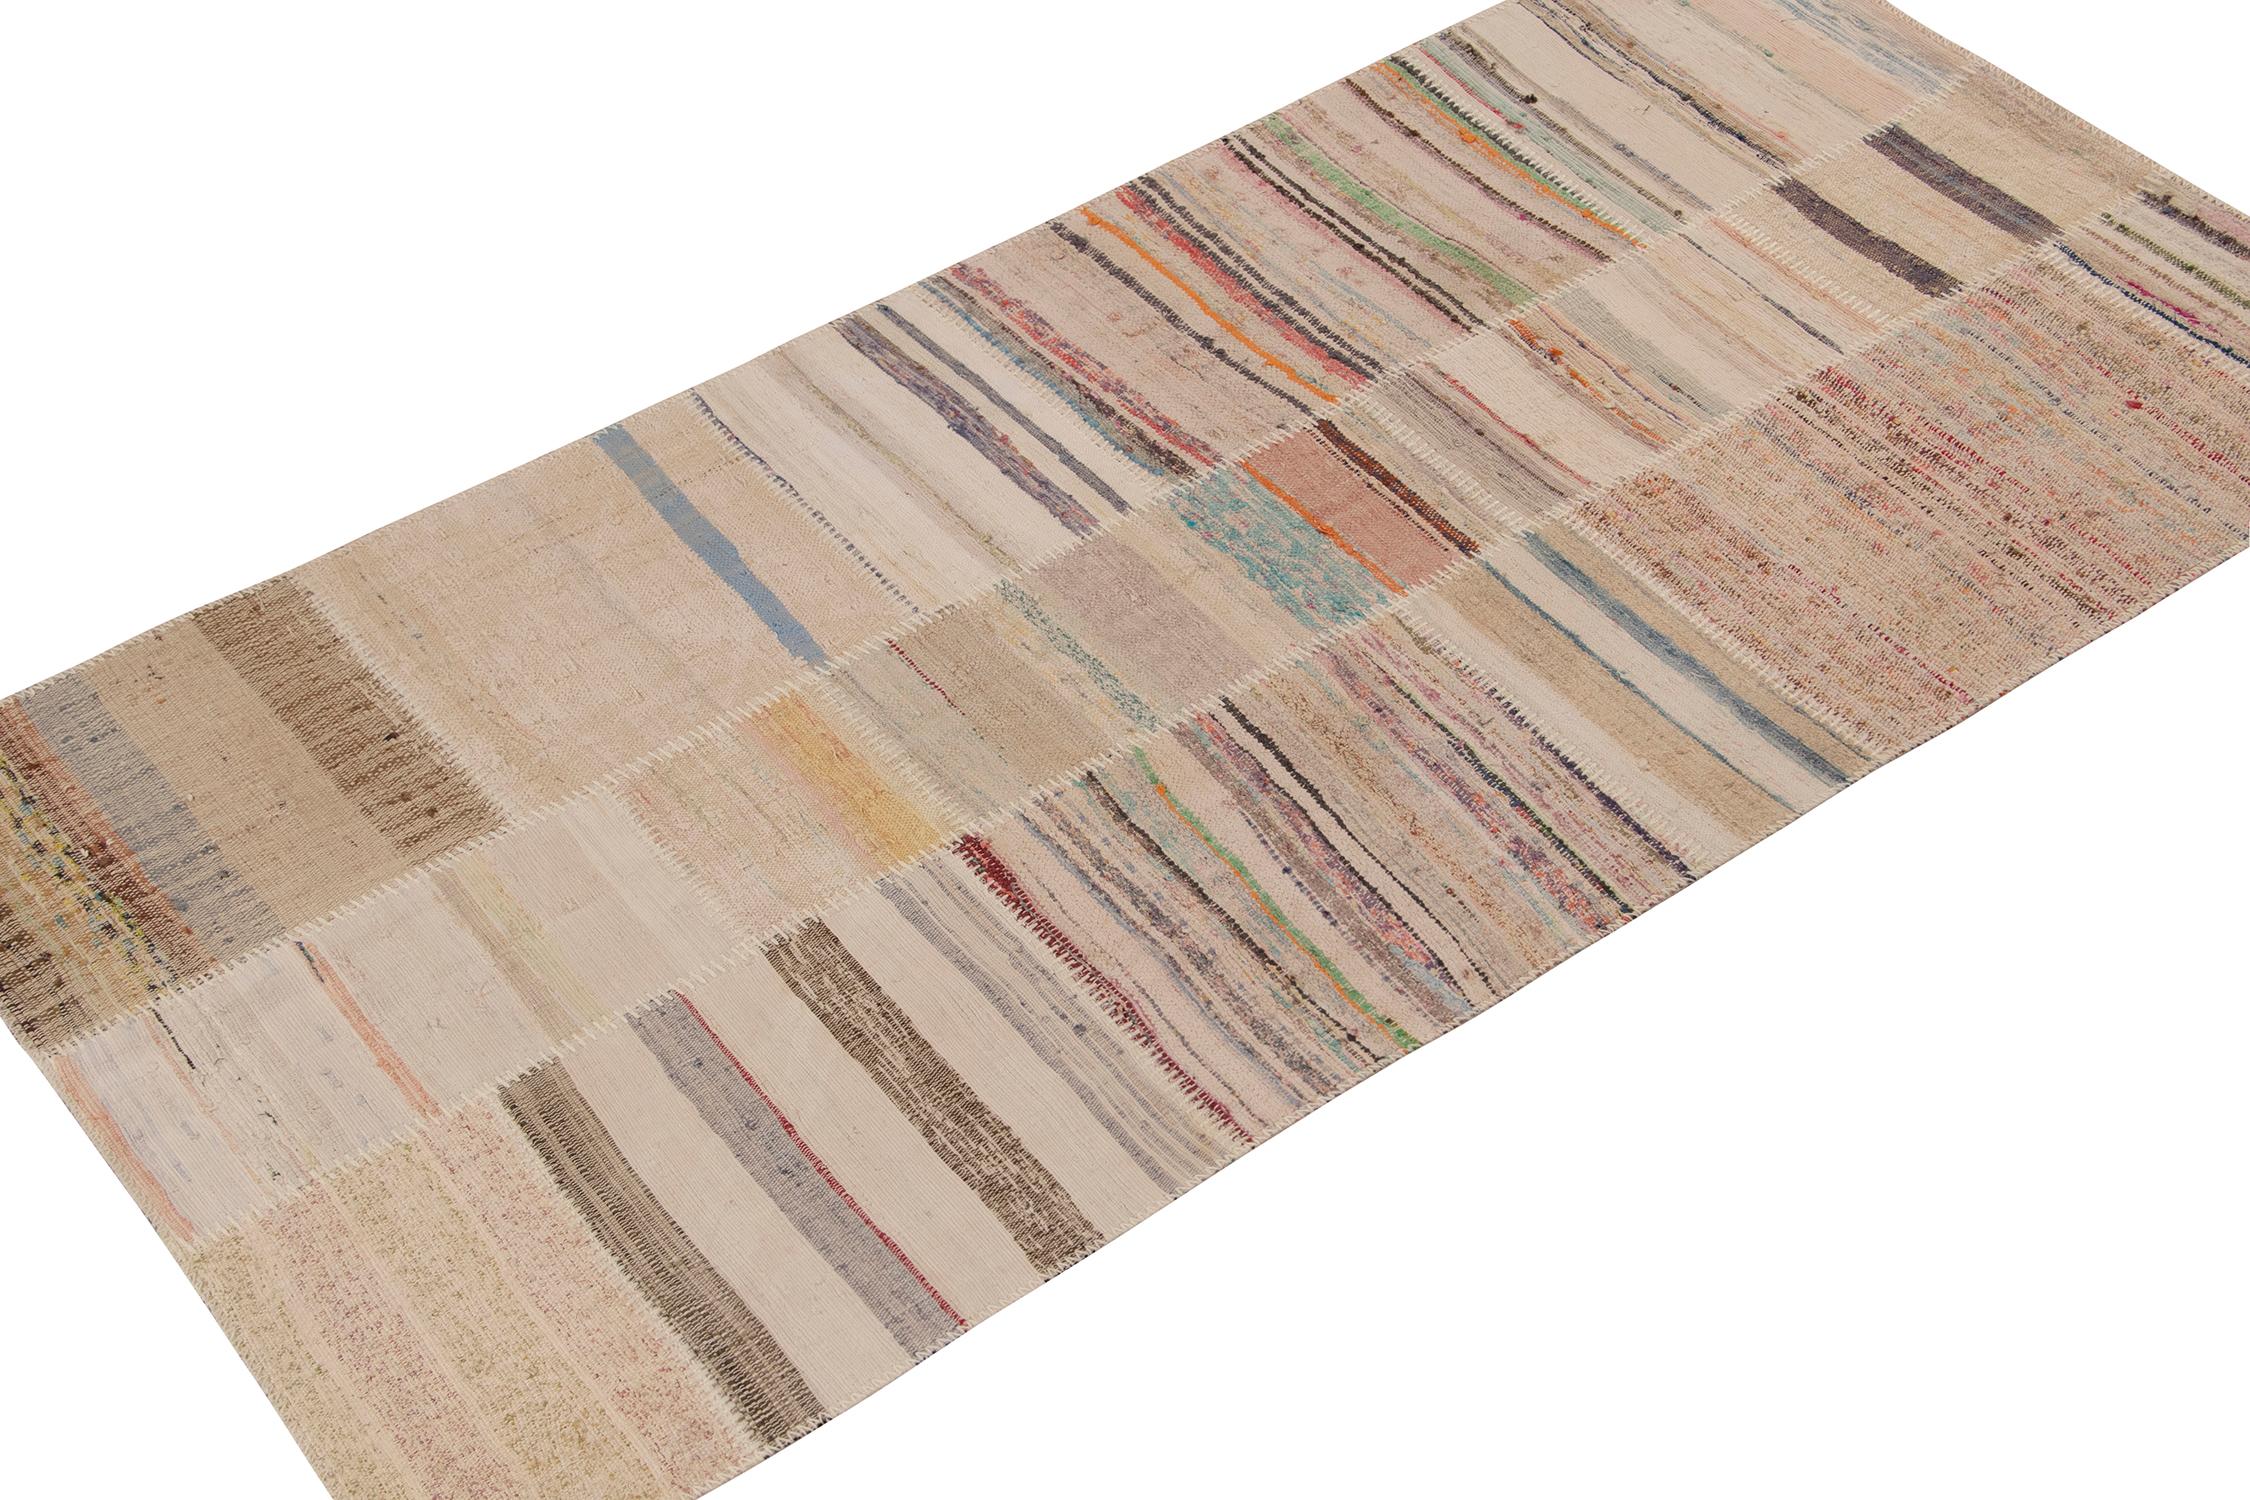 Rug & Kilim präsentiert einen zeitgenössischen Teppich (4x8) aus ihrer innovativen neuen Patchwork-Kelim-Kollektion.
Weiter zum Design:
Bei dieser Flachgewebetechnik werden Vintage-Garne in polychromen Streifen und Schlieren wiederverwendet, wodurch